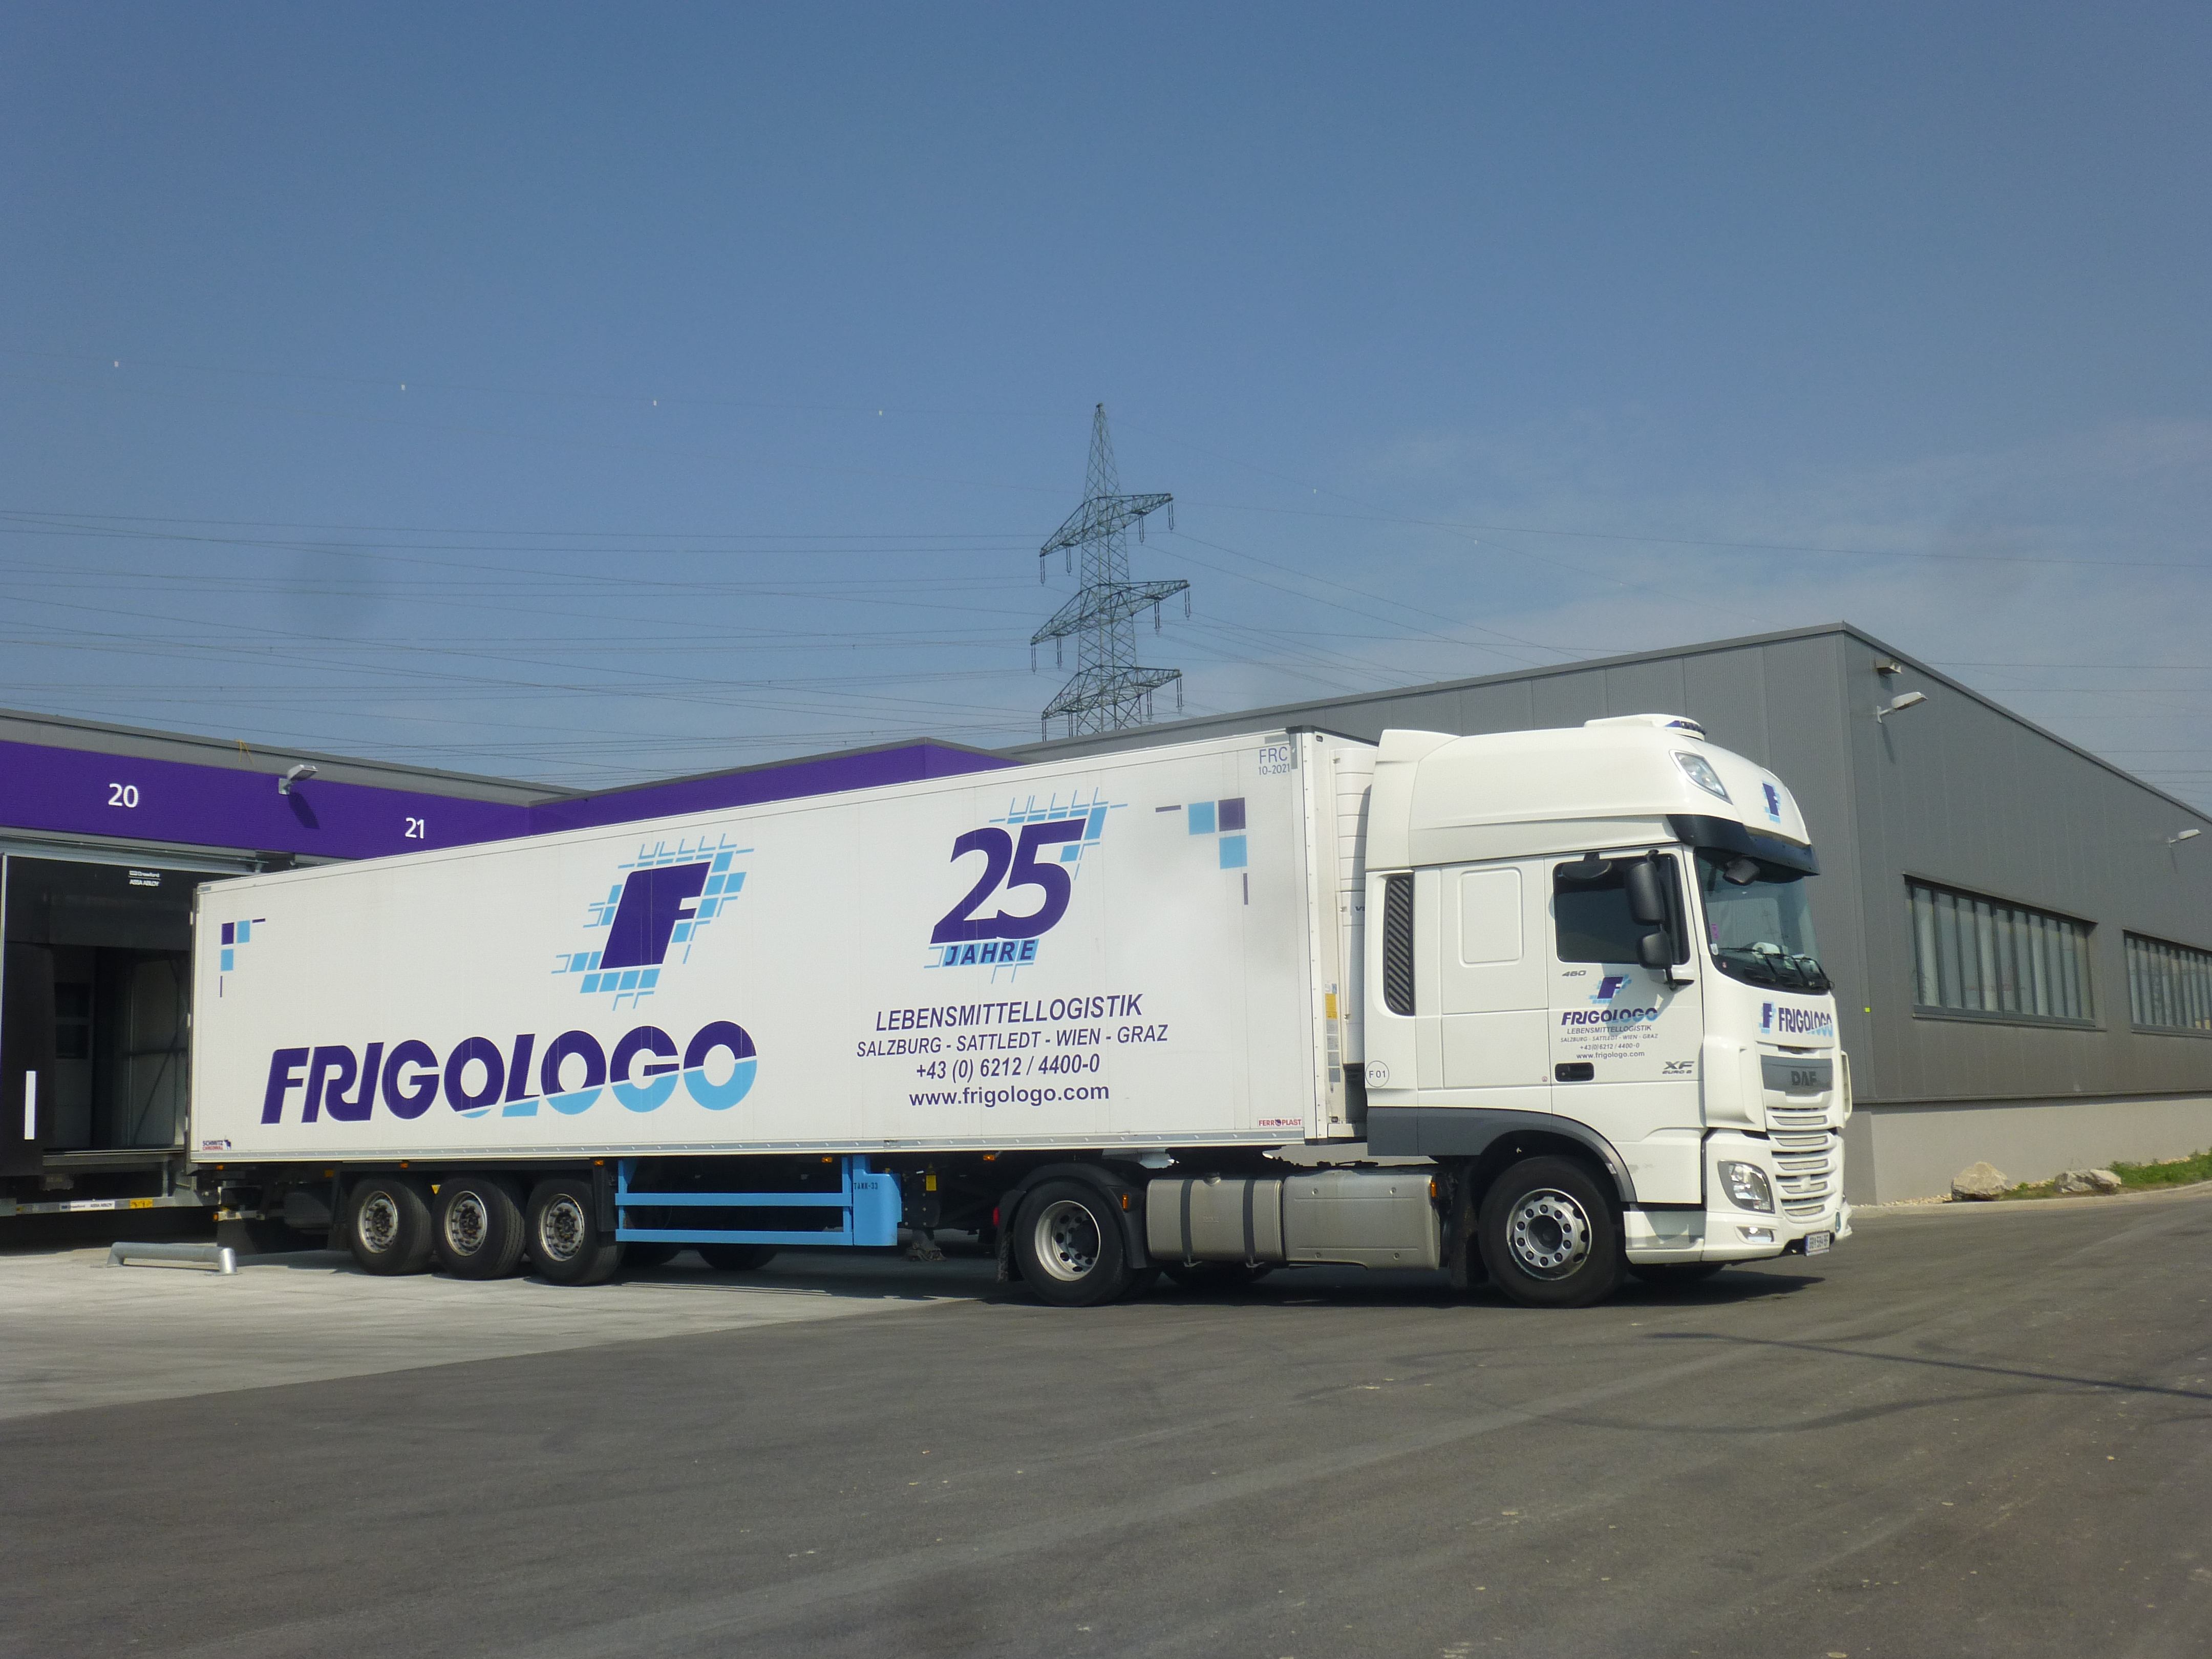 Frigologo opens EUR 17 million extension in Maria Lanzendorf